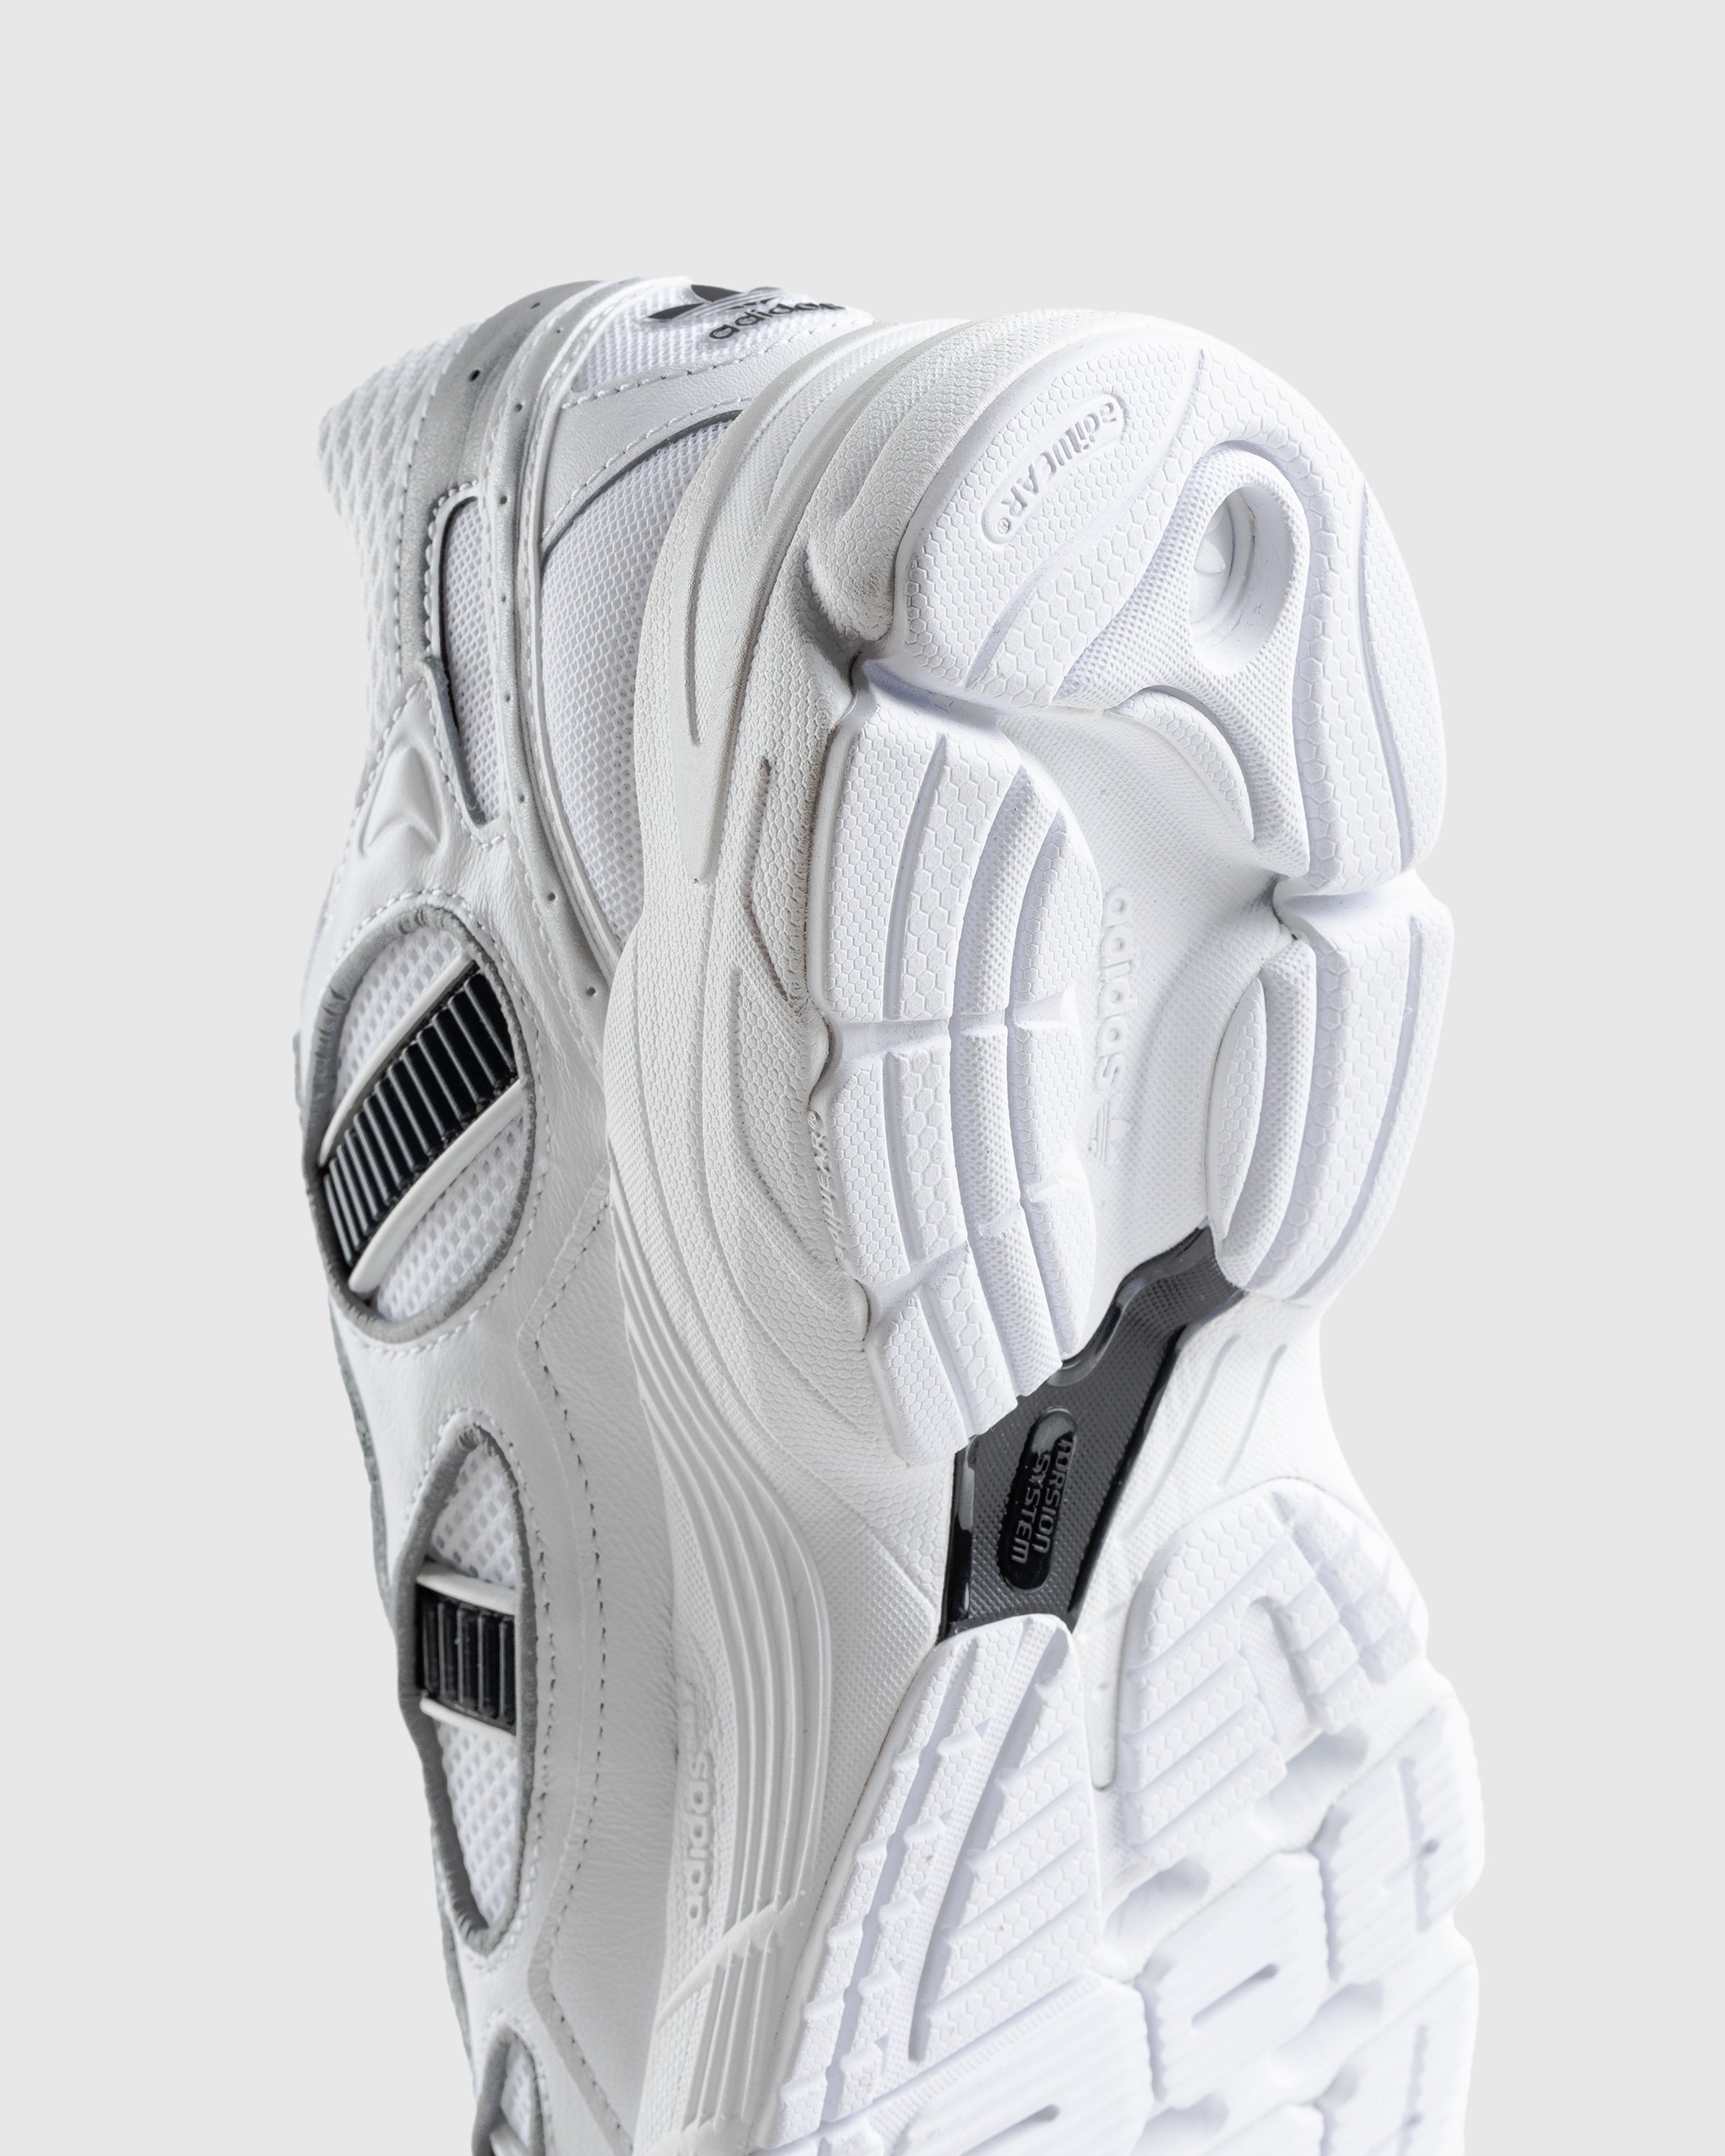 Adidas - Astir Sn White - Footwear - White - Image 6